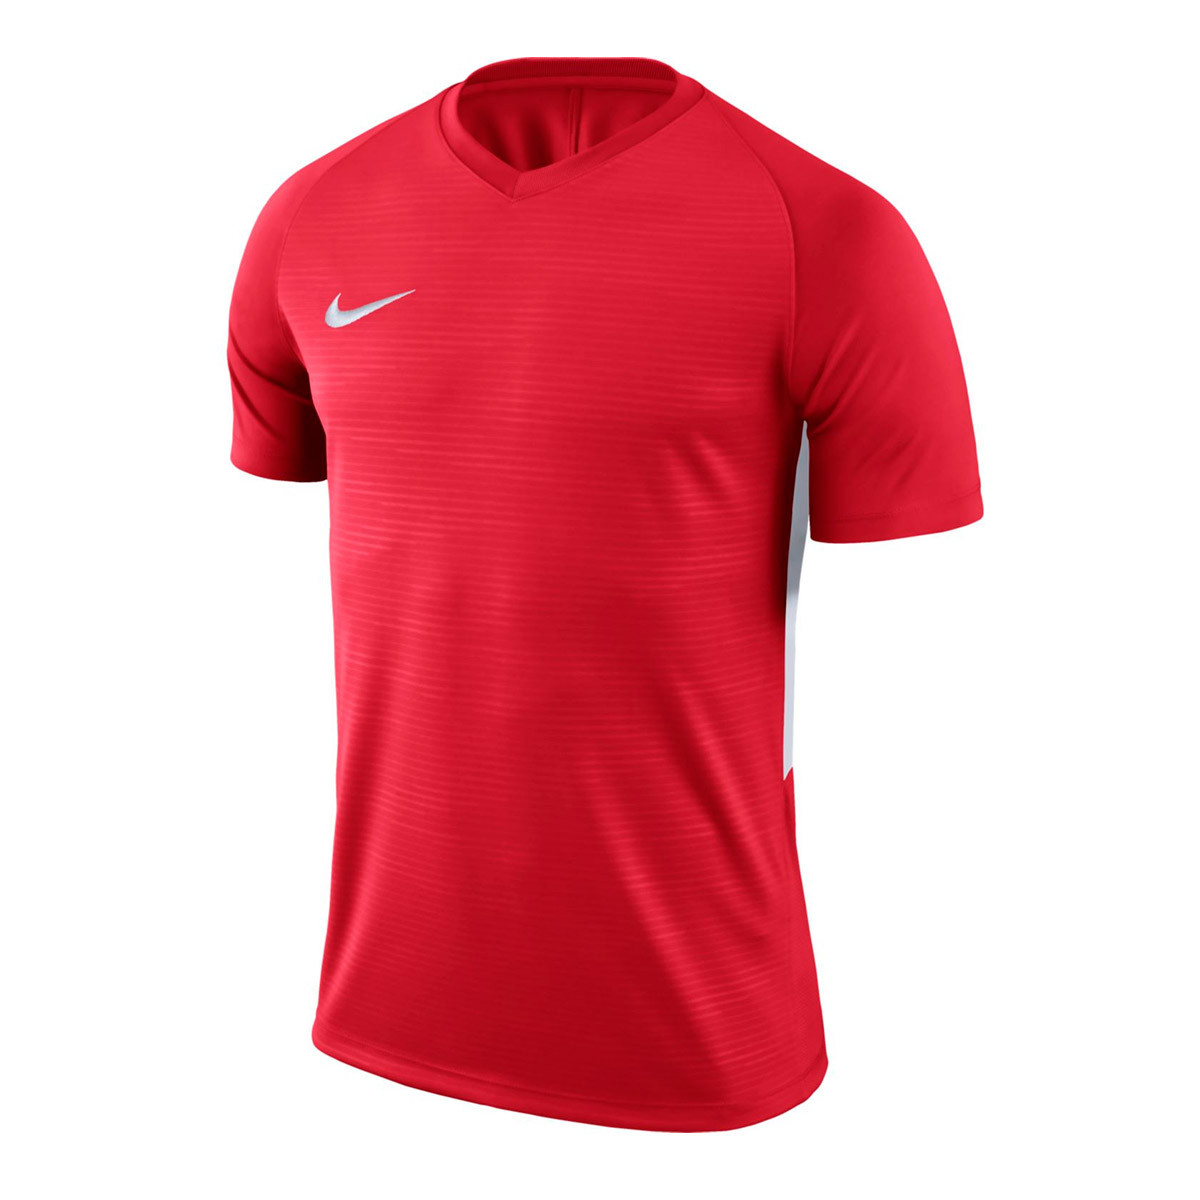 Camiseta Nike Tiempo Premier m/c - Fútbol